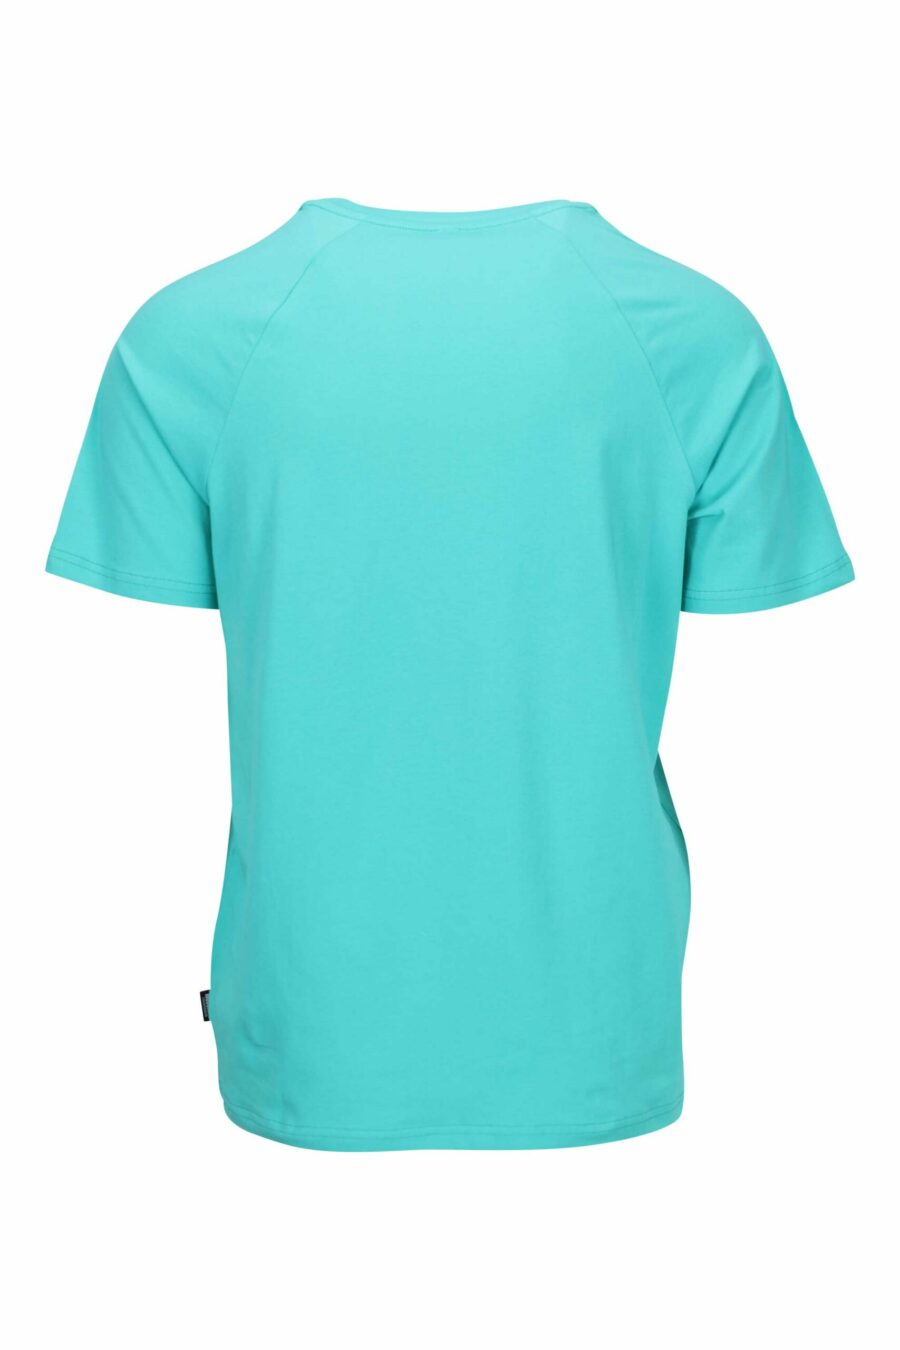 T-shirt bleu aigue-marine avec le logo de l'ours "underbear" sur la bande d'épaule - 667113602400 1 à l'échelle